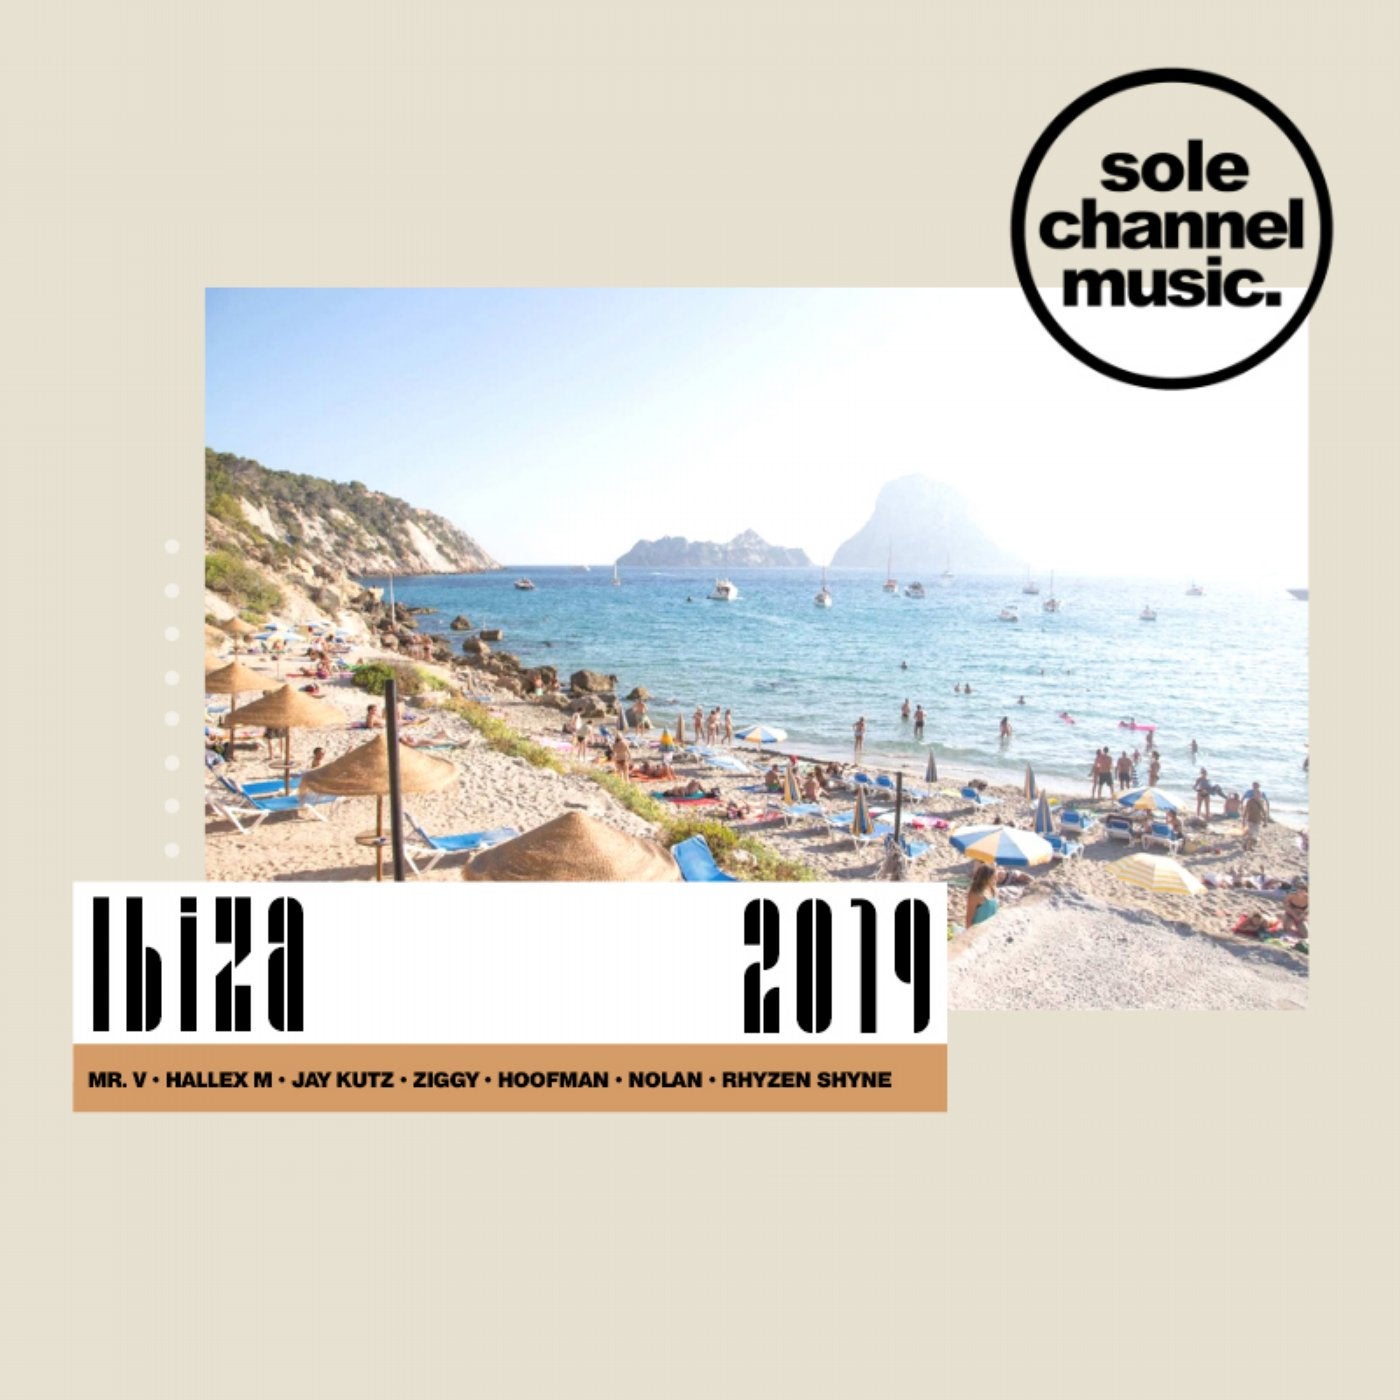 Sole Channel Music Ibiza 2019